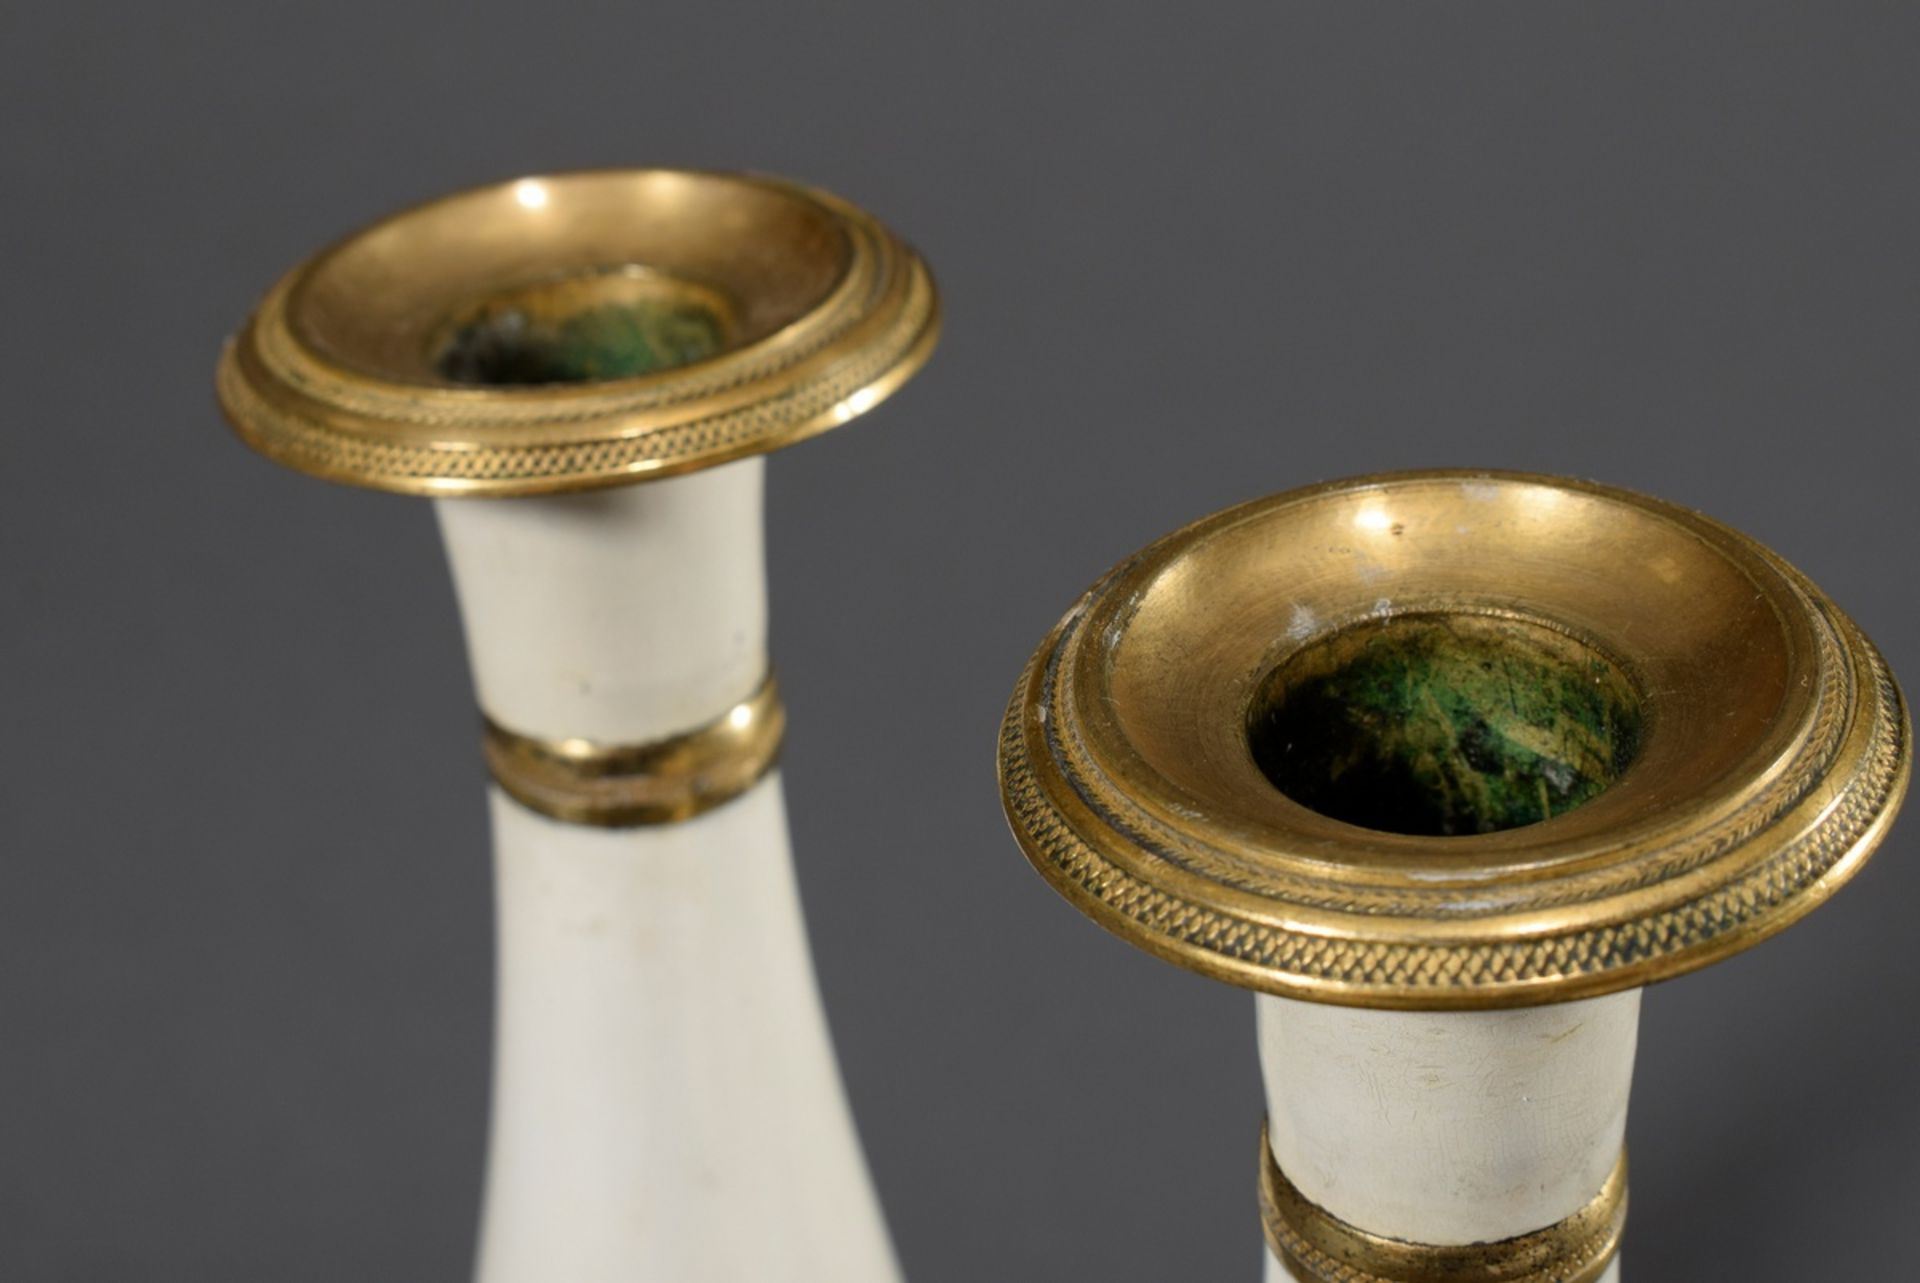 Paar Stobwasser Zinn Leuchter auf quadratischem Fuß und vasenförmigem Schaft, monochrom weiß lackie - Bild 2 aus 4